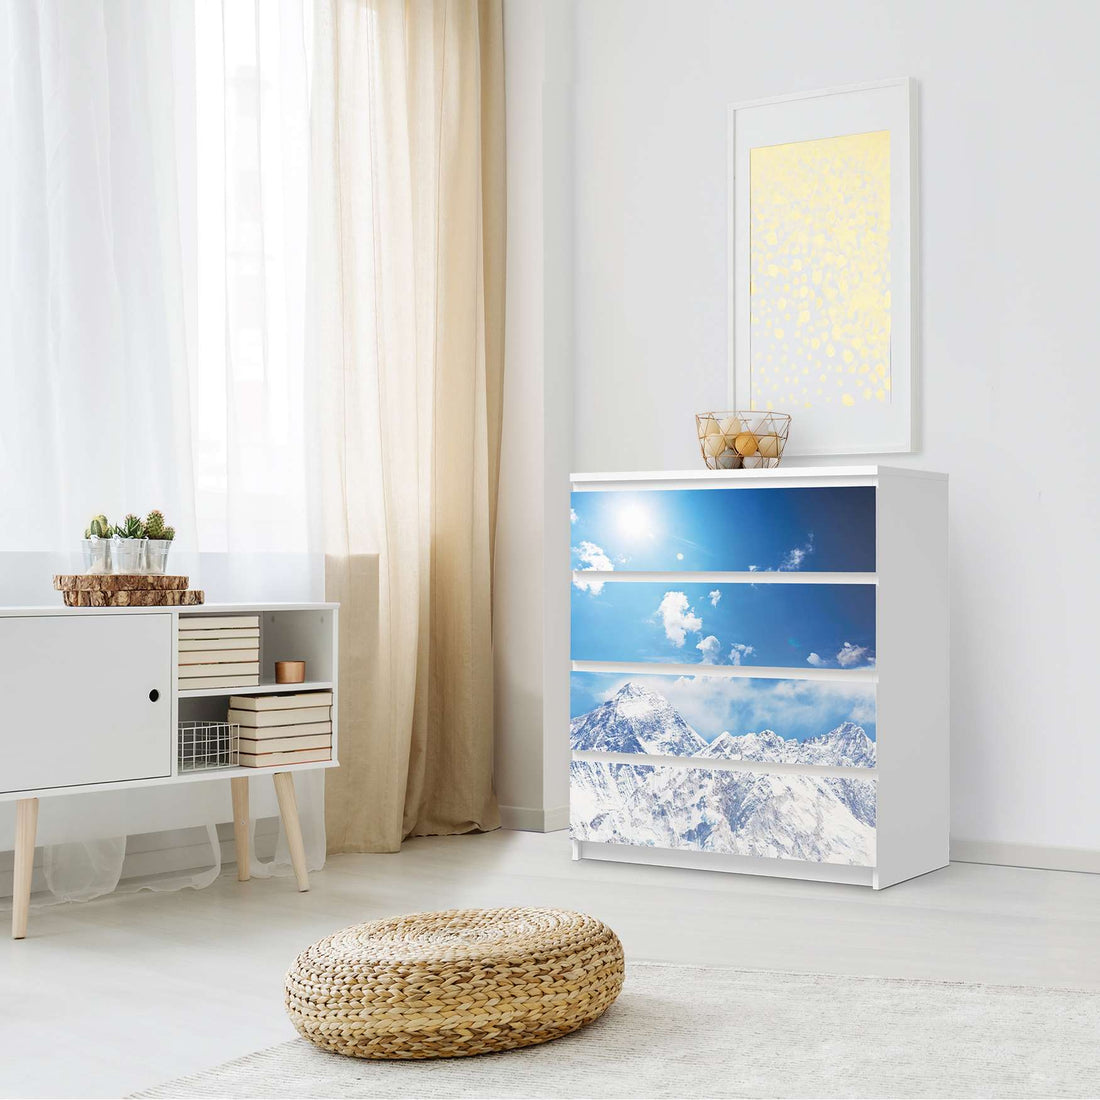 Folie für Möbel Everest - IKEA Malm Kommode 4 Schubladen - Schlafzimmer